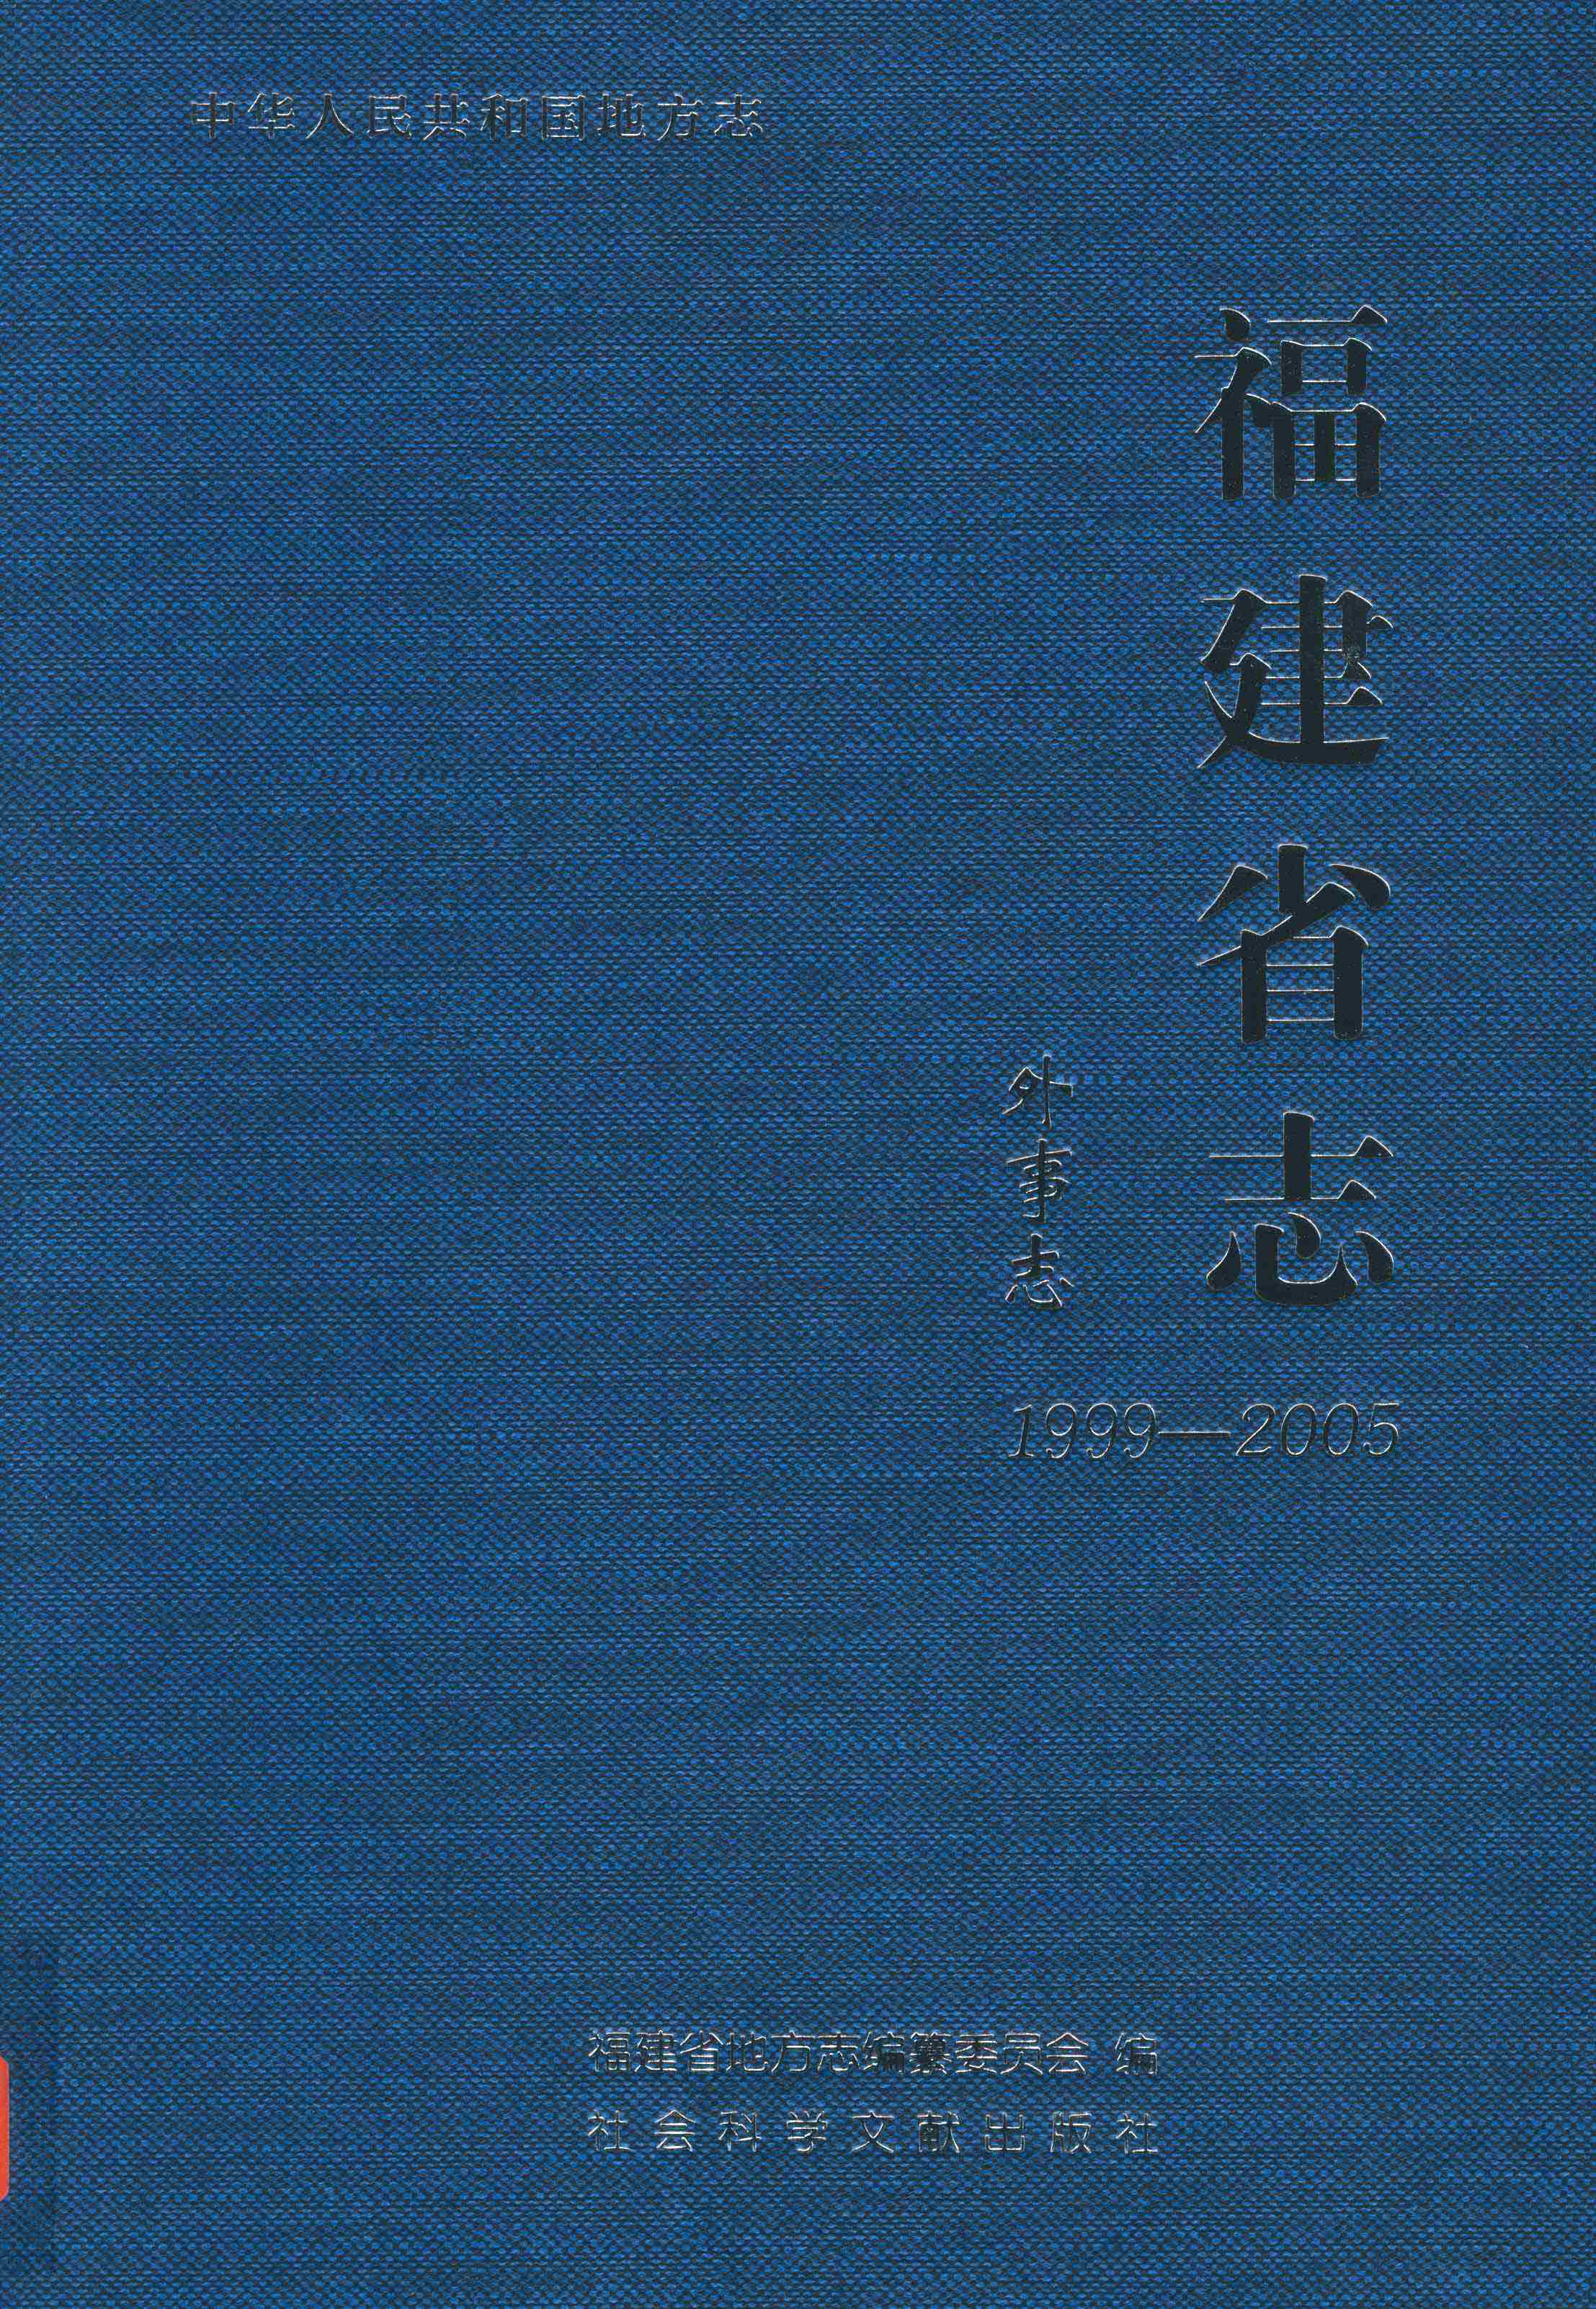 福建省志·外事志1999~2005